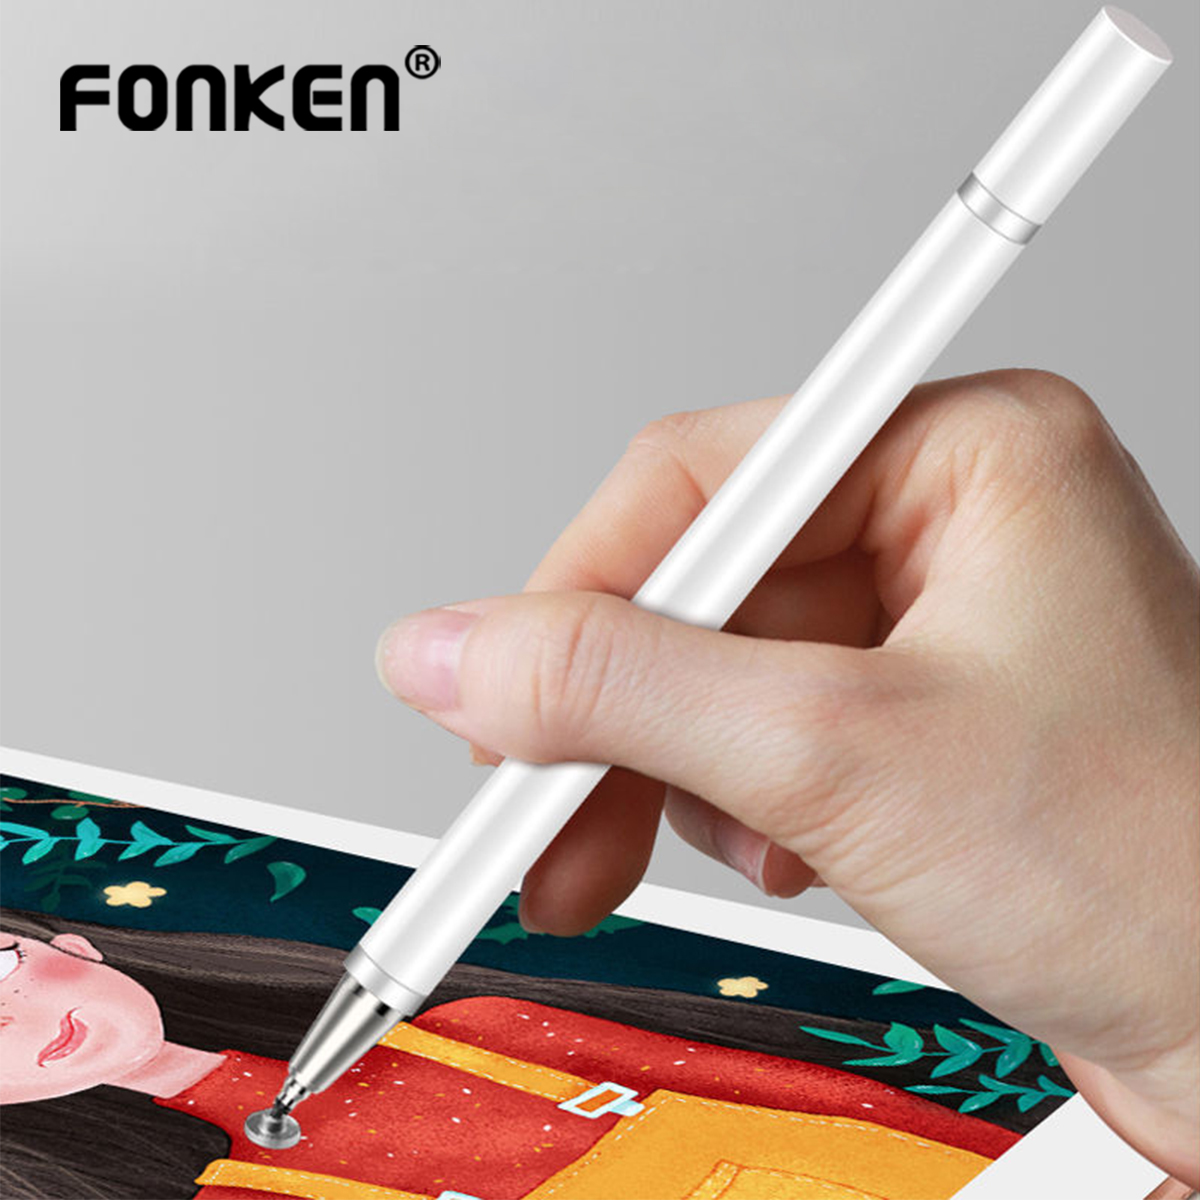 2 In 1 Stylus Pen Voor Smartphone Tablet Tekening Capacitieve Potlood Universele Android Mobiele Scherm Touch Pen Voor Ipad Mini 1 2 3